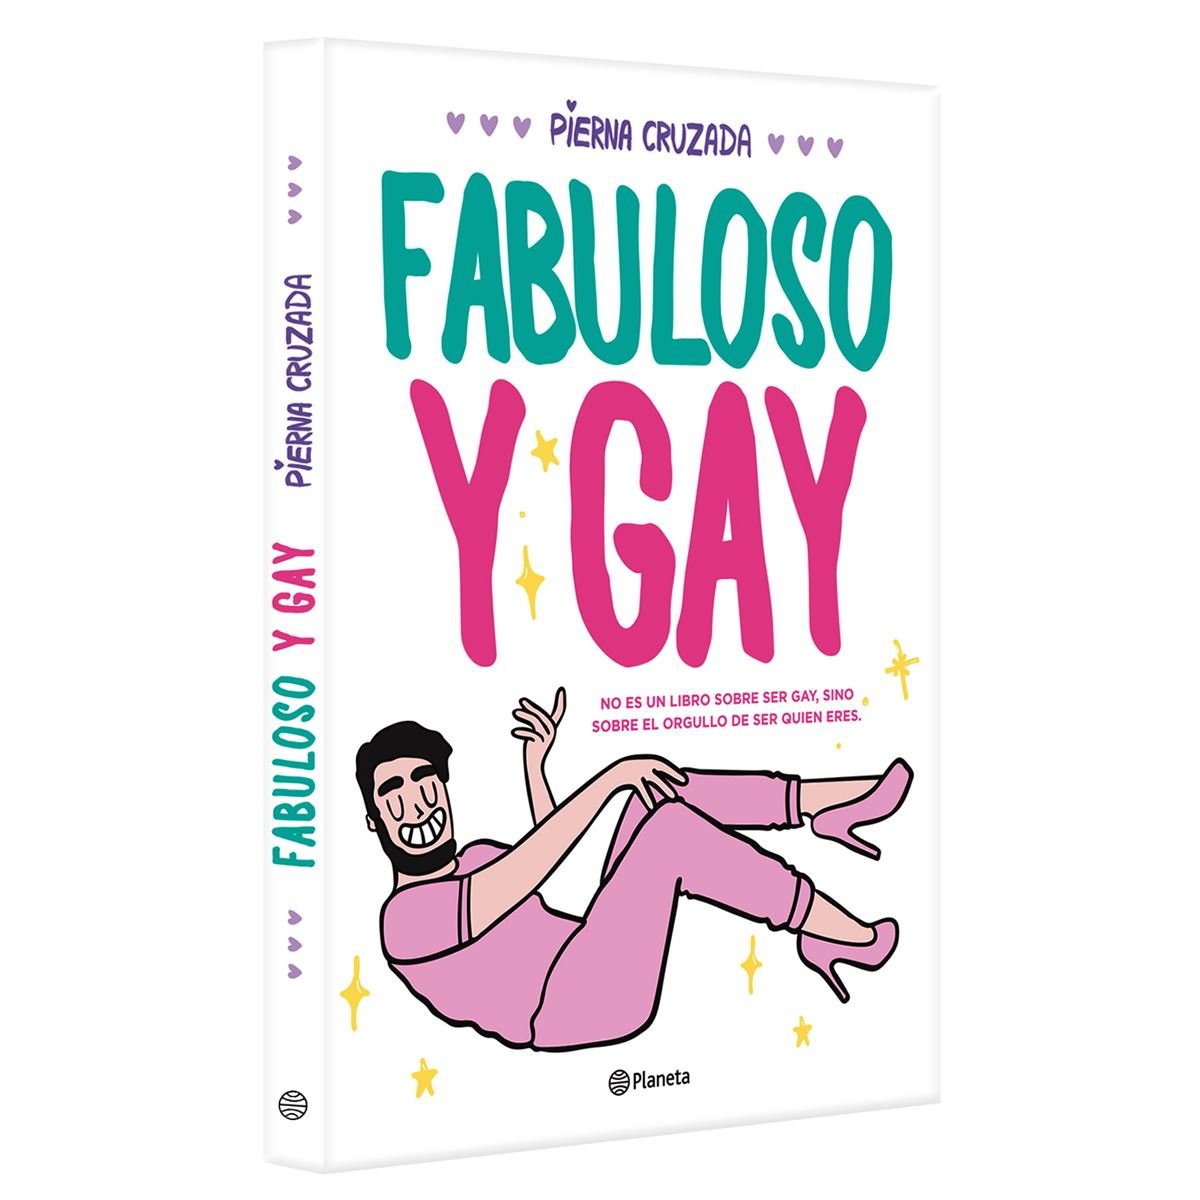 Fabuloso y gay